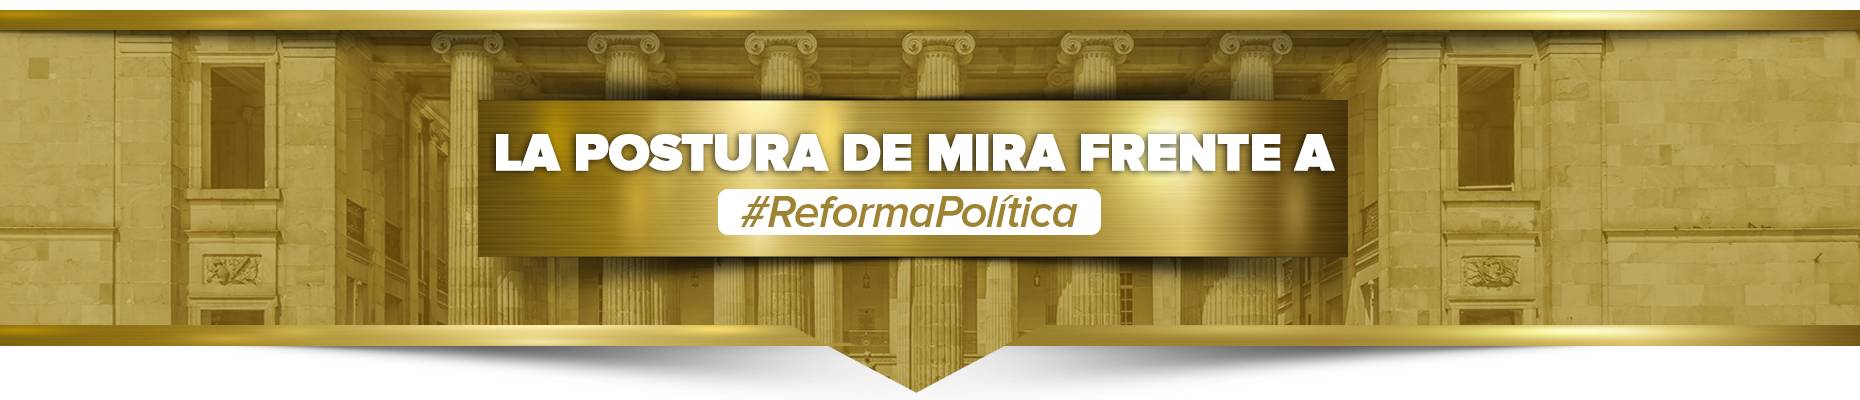 Slide-Reforma-min.jpg